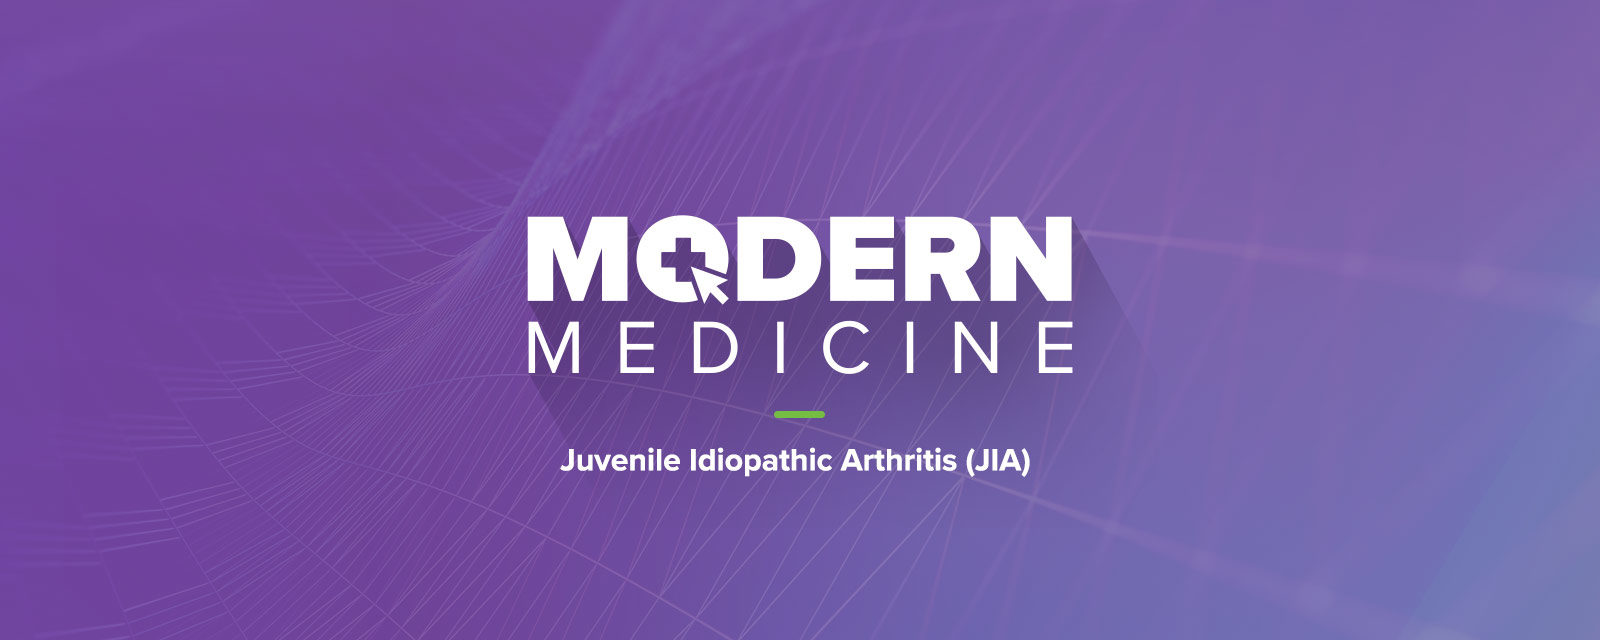 Modern Medicine: Juvenile Idiopathic Arthritis (JIA)